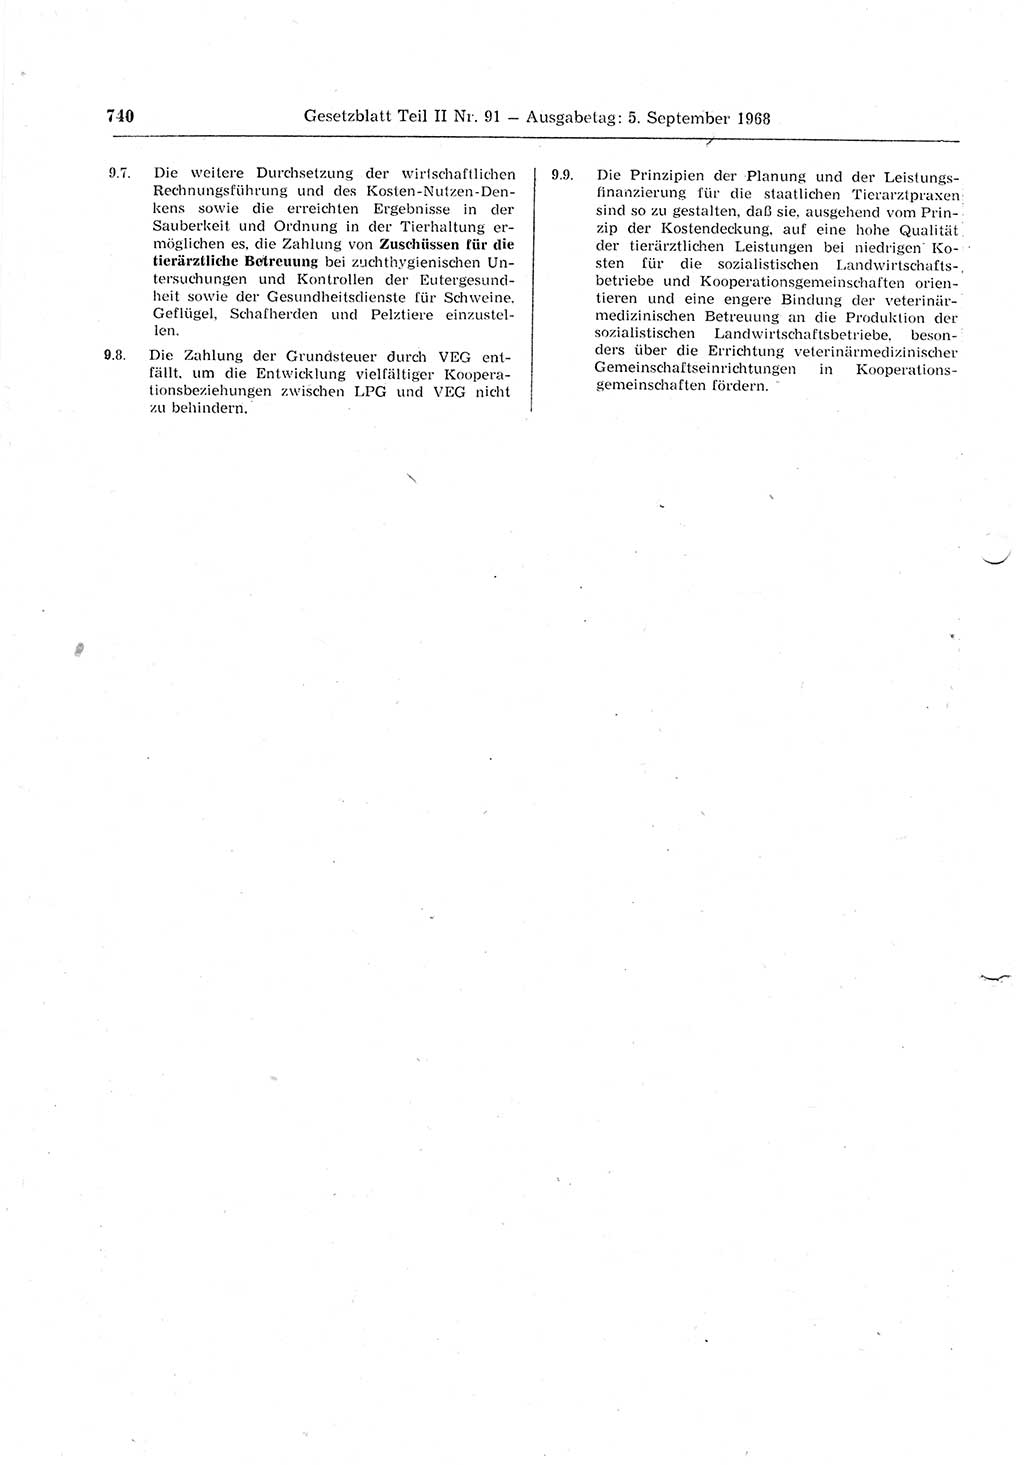 Gesetzblatt (GBl.) der Deutschen Demokratischen Republik (DDR) Teil ⅠⅠ 1968, Seite 740 (GBl. DDR ⅠⅠ 1968, S. 740)